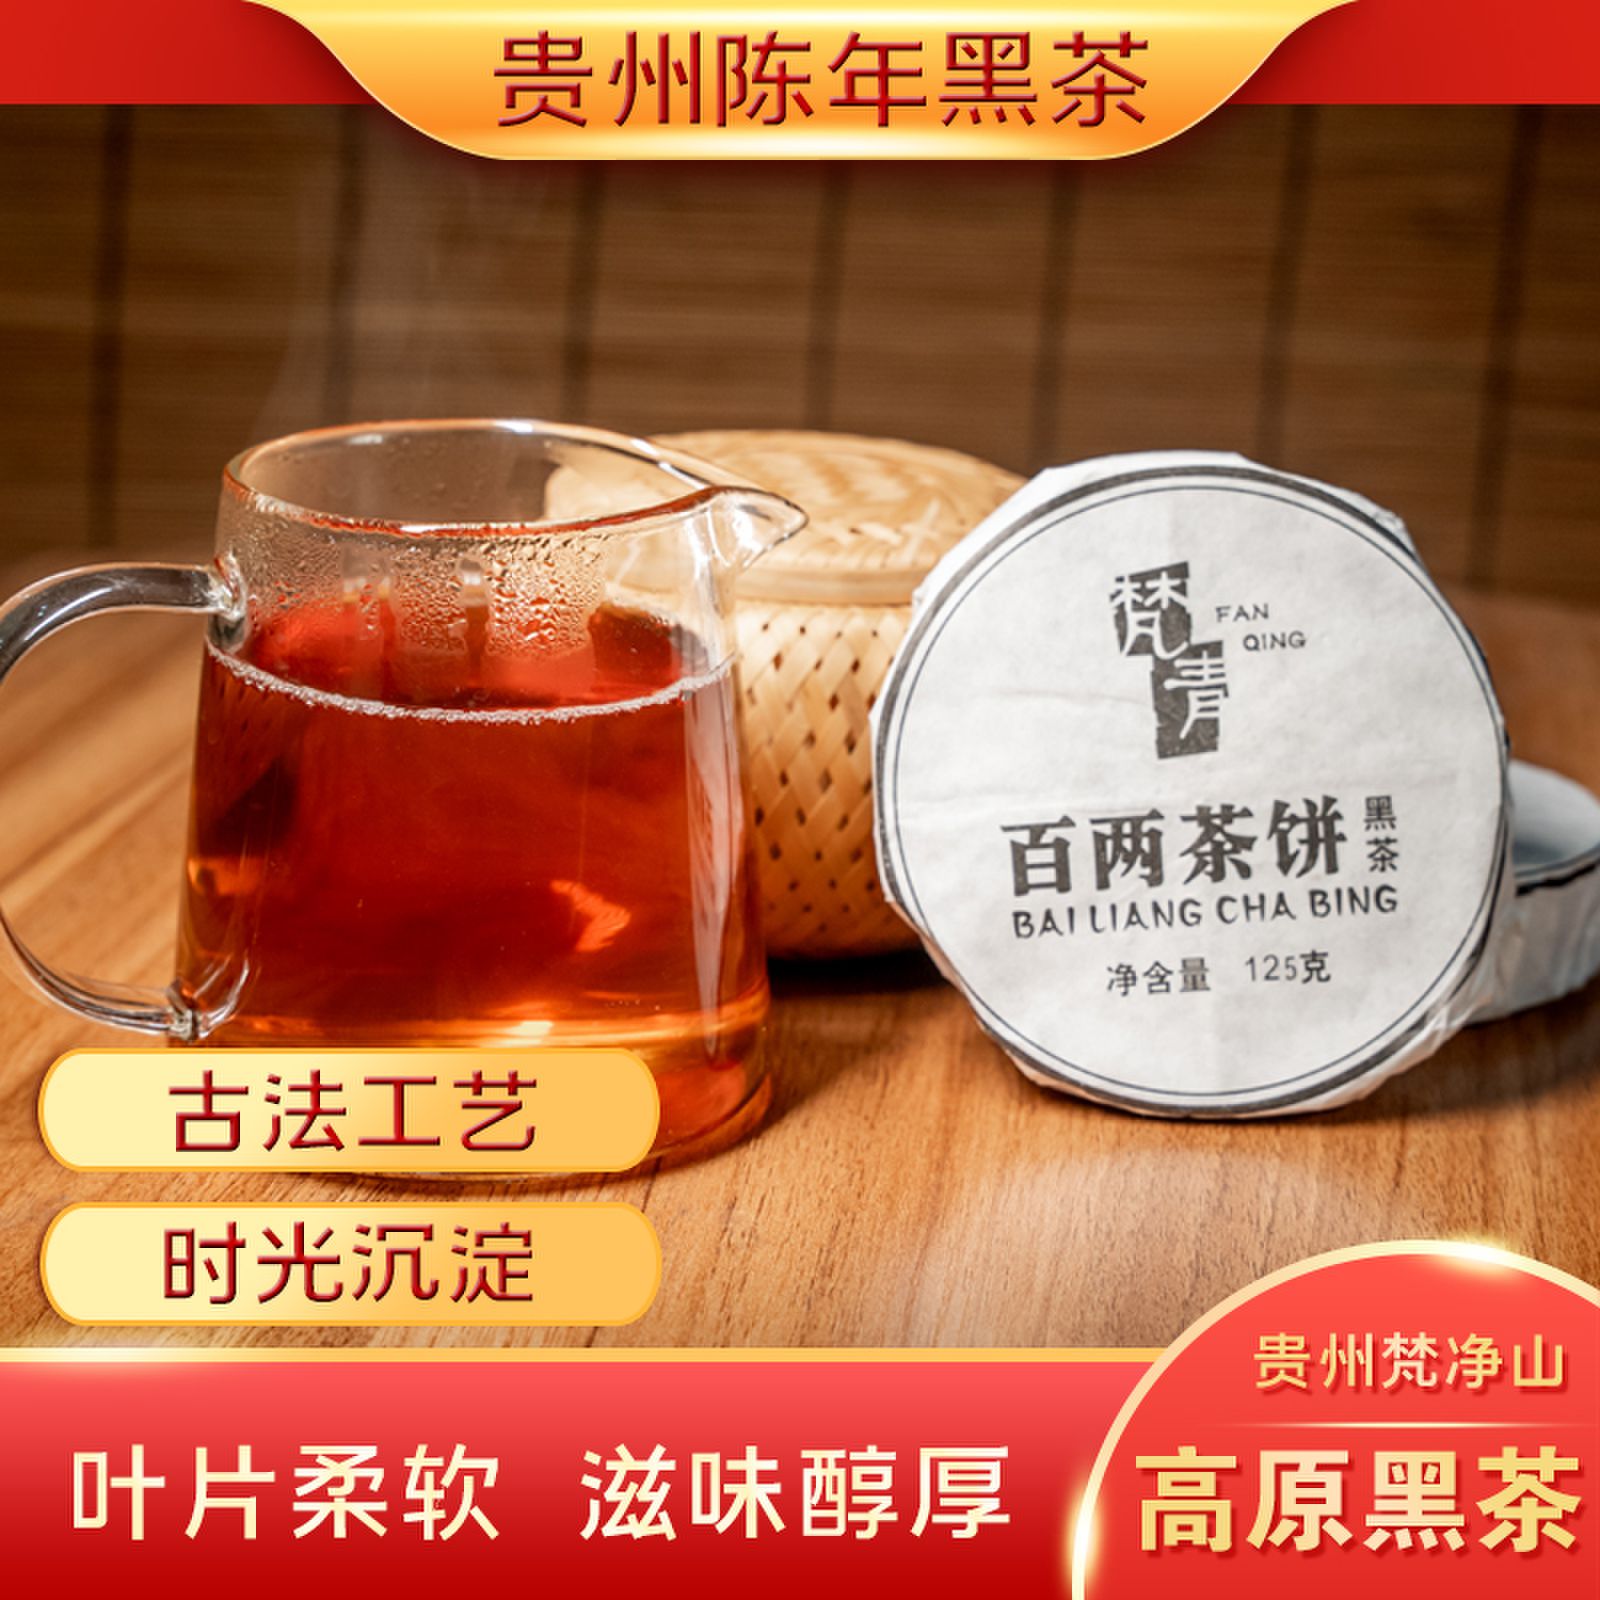 百两茶饼 传统手工制作地道陈茶净含量150g 贵州梵青黑茶